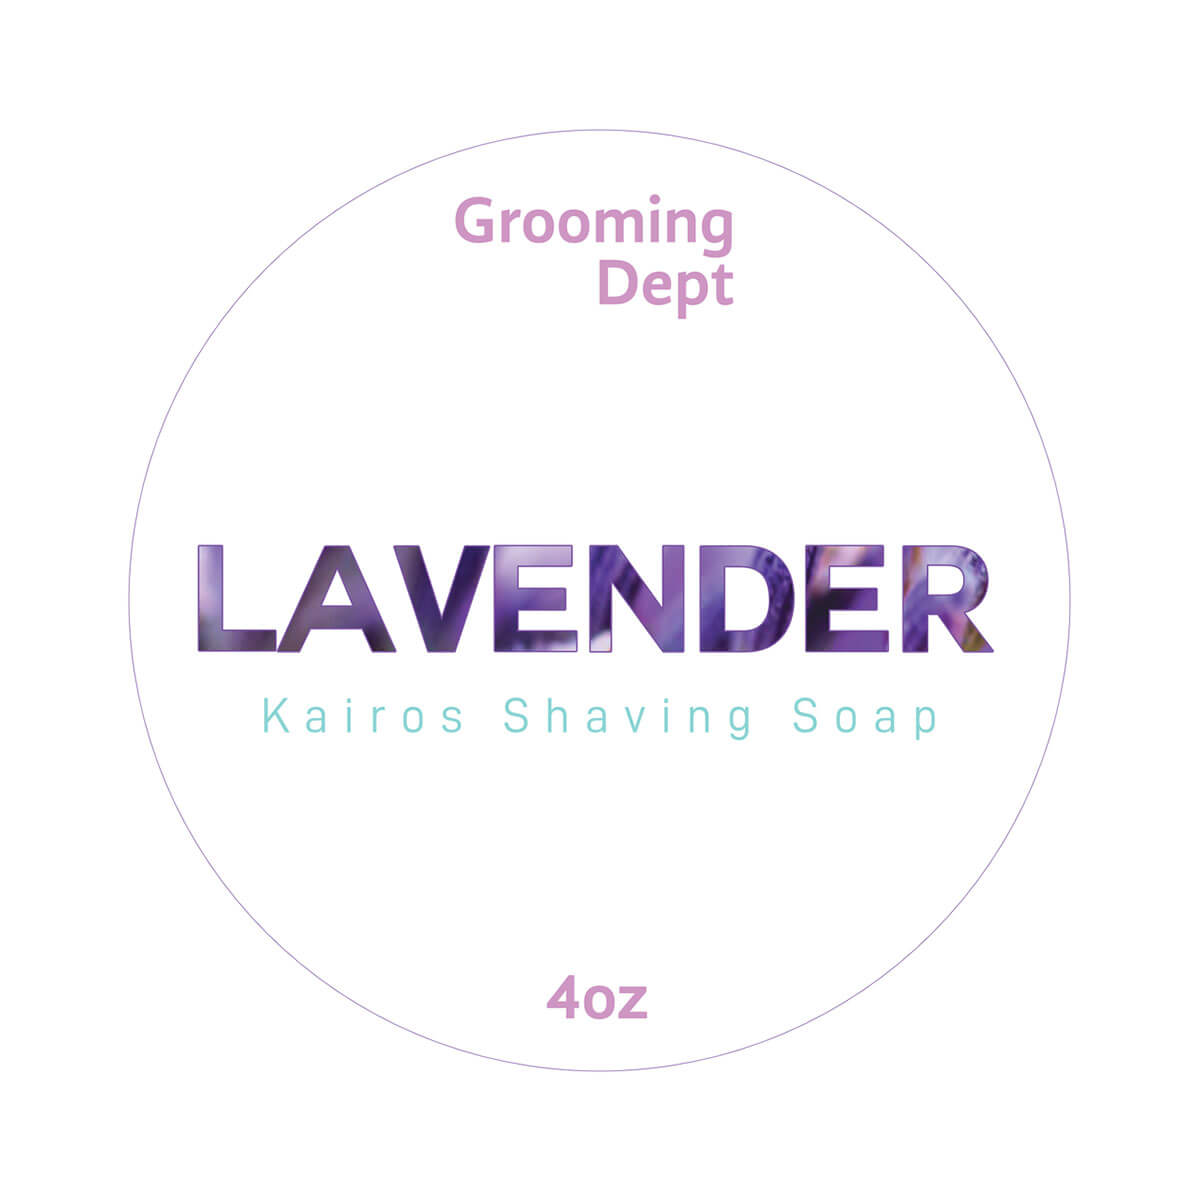 Grooming Dept Lavender Shaving Soap